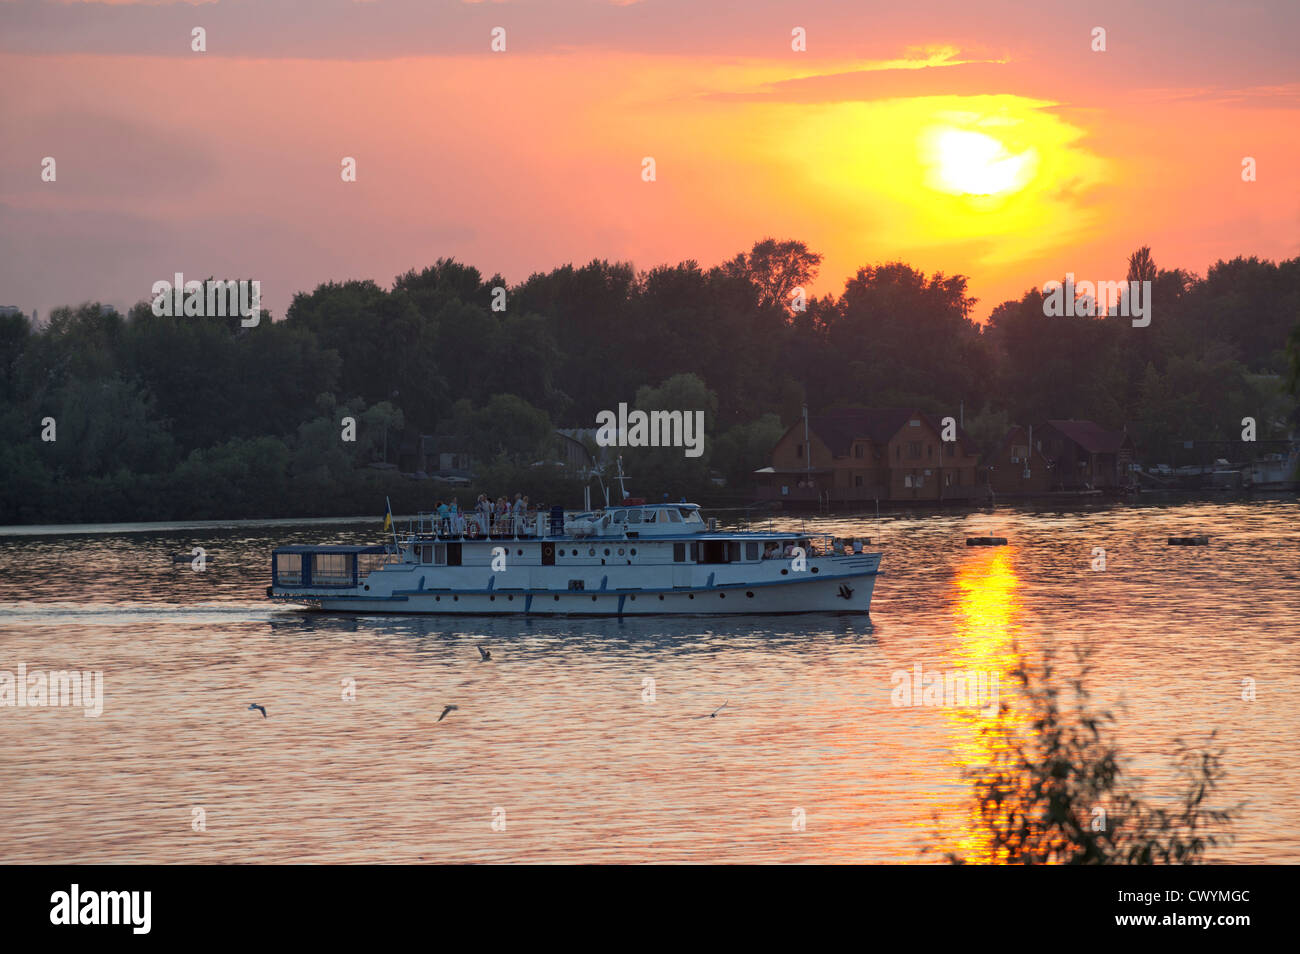 Bateau de croisière à fleuve Dniepr, Kiev, Ukraine, l'Europe Banque D'Images